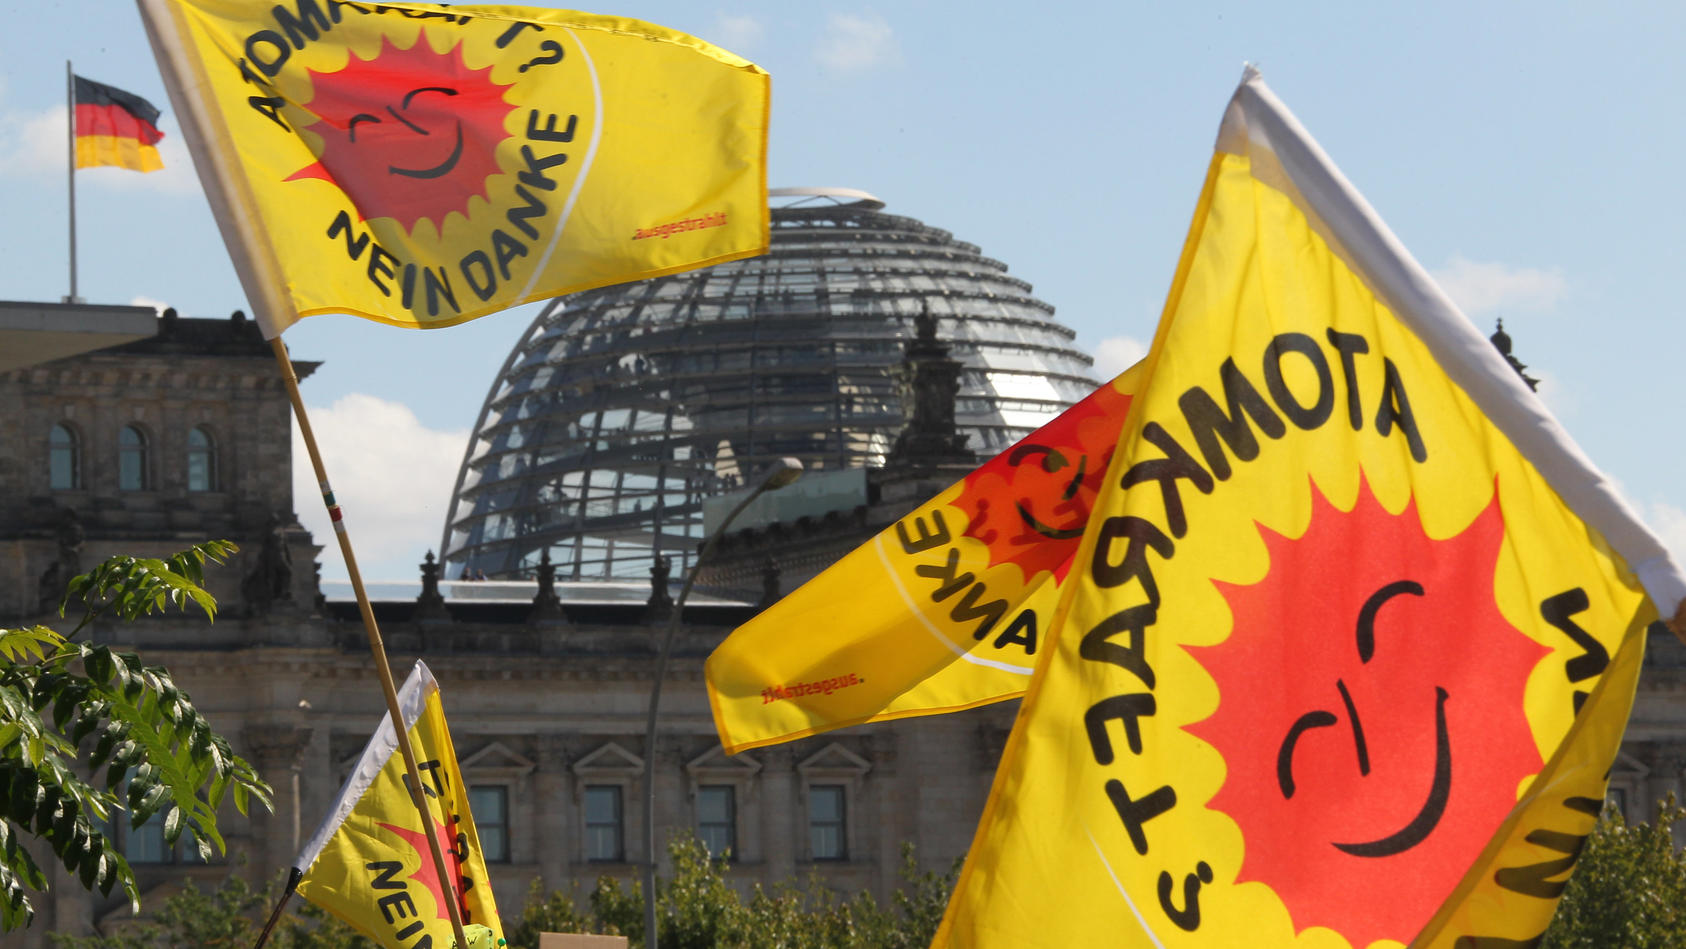 Fahnen von Atomkraft-Gegnern, die am Kanzleramt in Berlin gegen die Atompolitik der Bunderegierung demonstrieren, wehen am Sonntag (05.09.2010) vor der Kuppel des Reichstages. Die Spitzen der Koalition unter Leitung von Bundeskanzlerin Merkel treffen